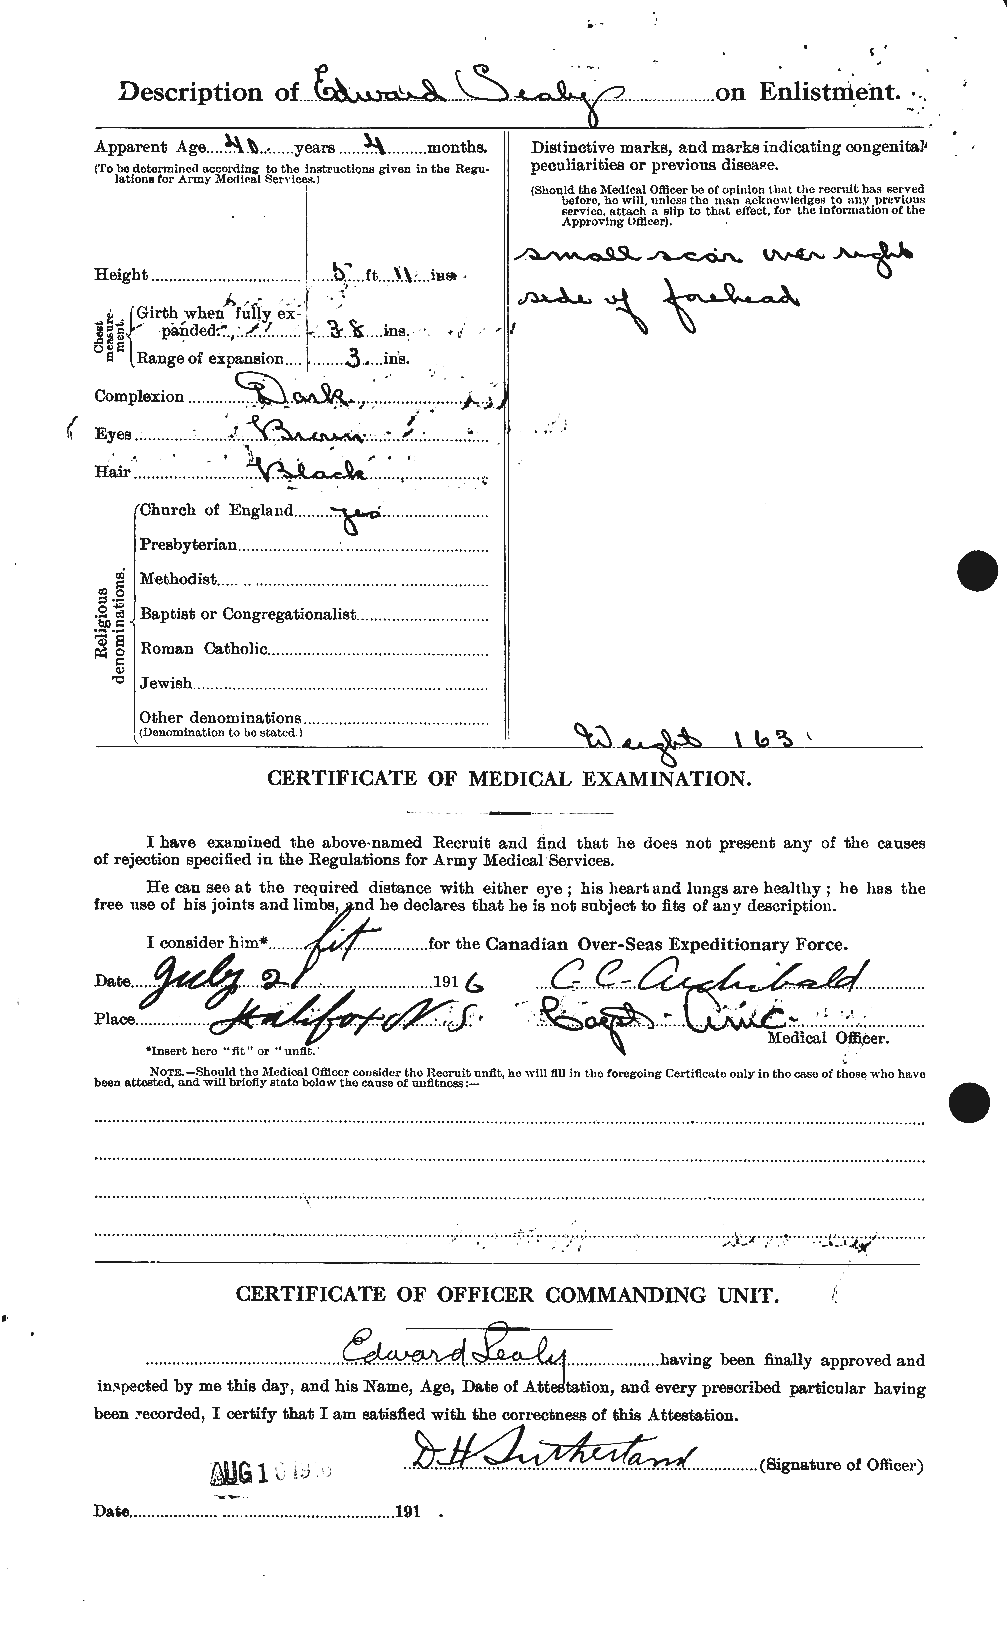 Dossiers du Personnel de la Première Guerre mondiale - CEC 622392b